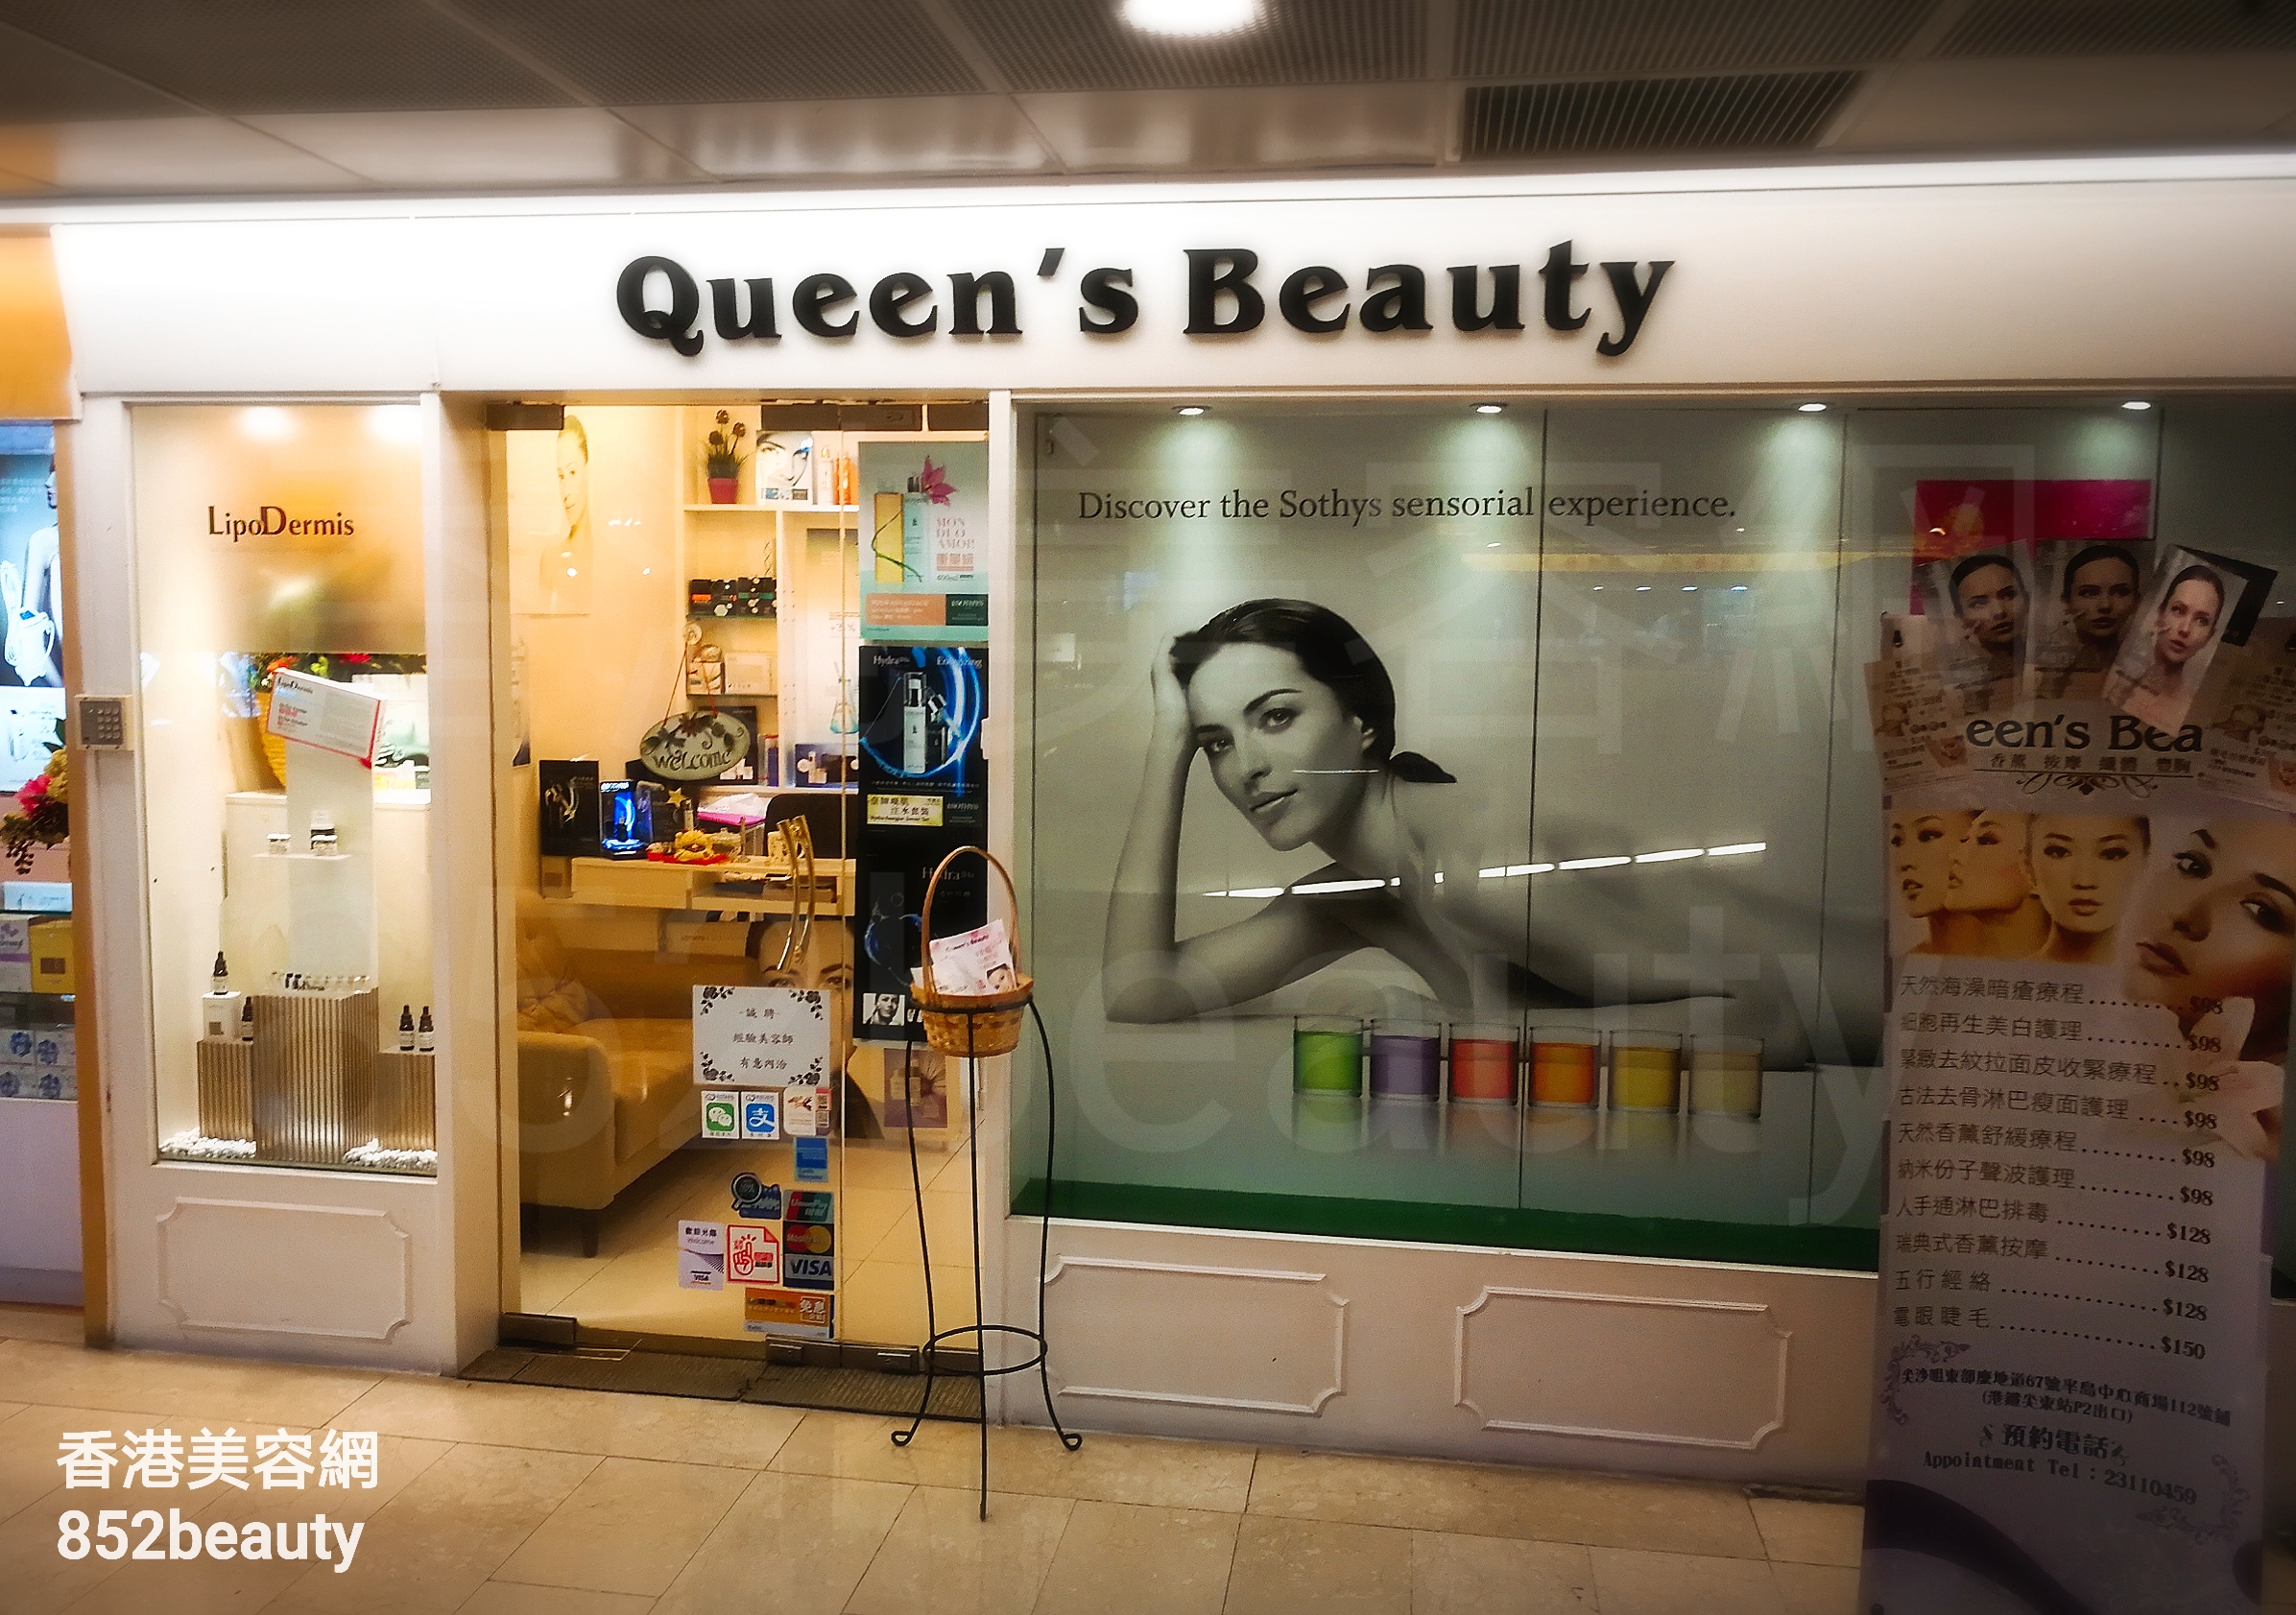 美容院 Beauty Salon: Queen's Beauty